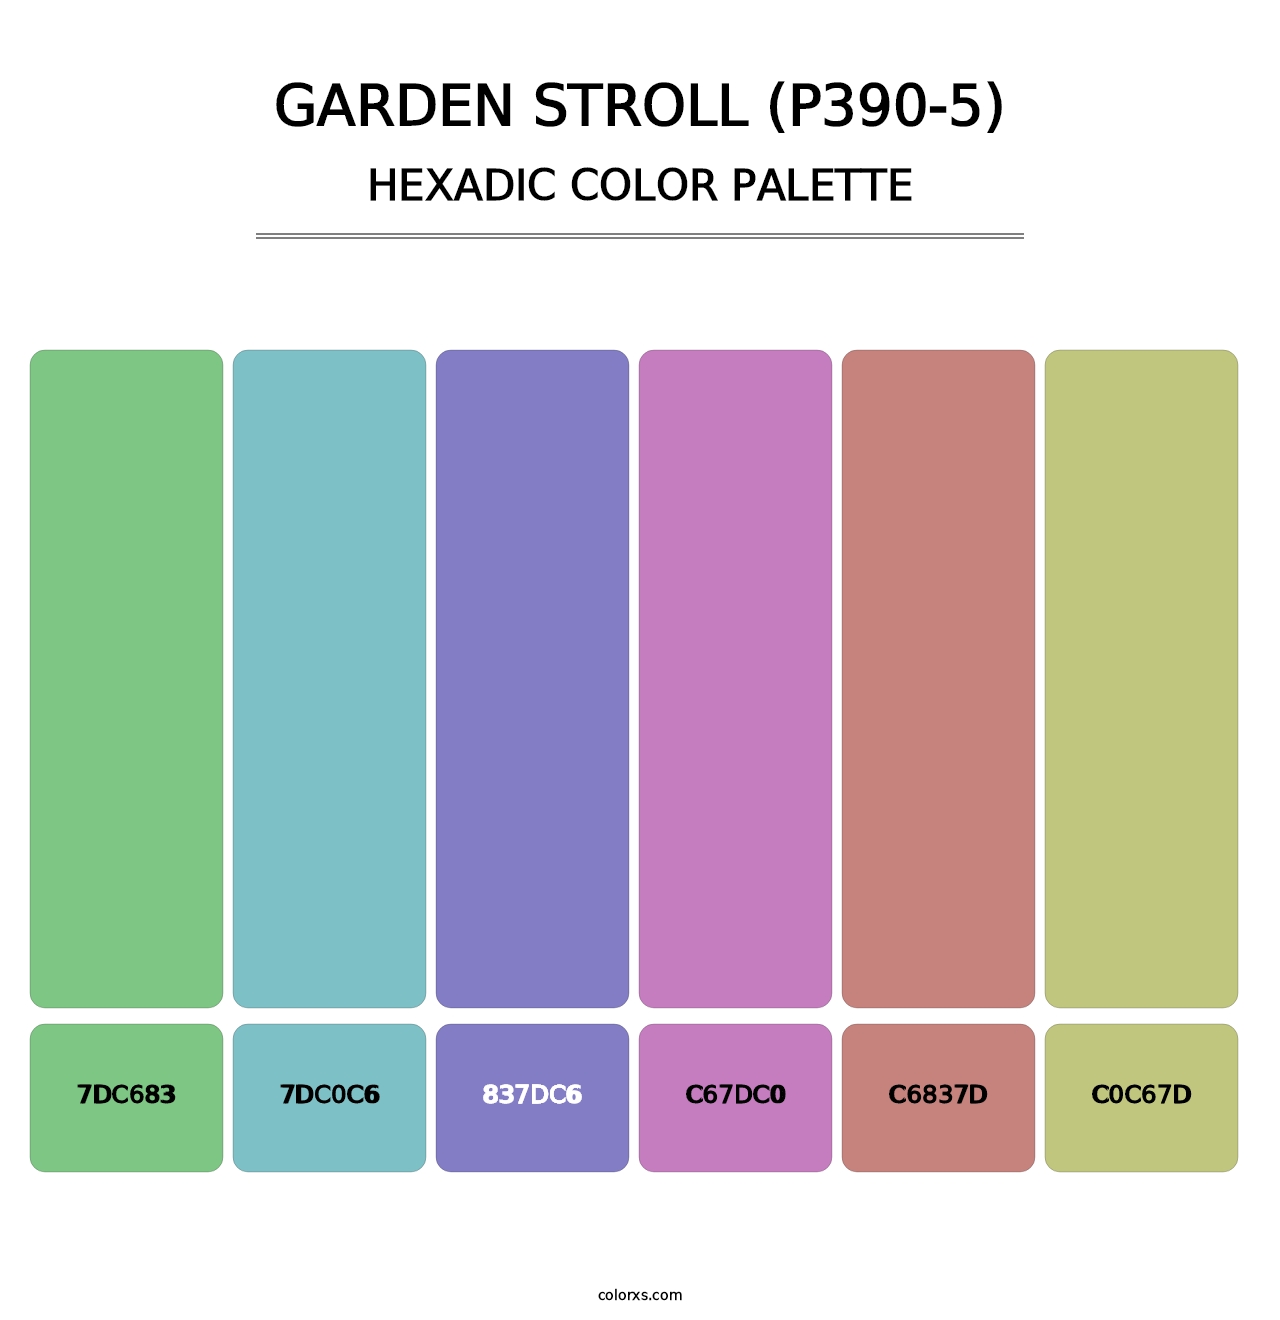 Garden Stroll (P390-5) - Hexadic Color Palette